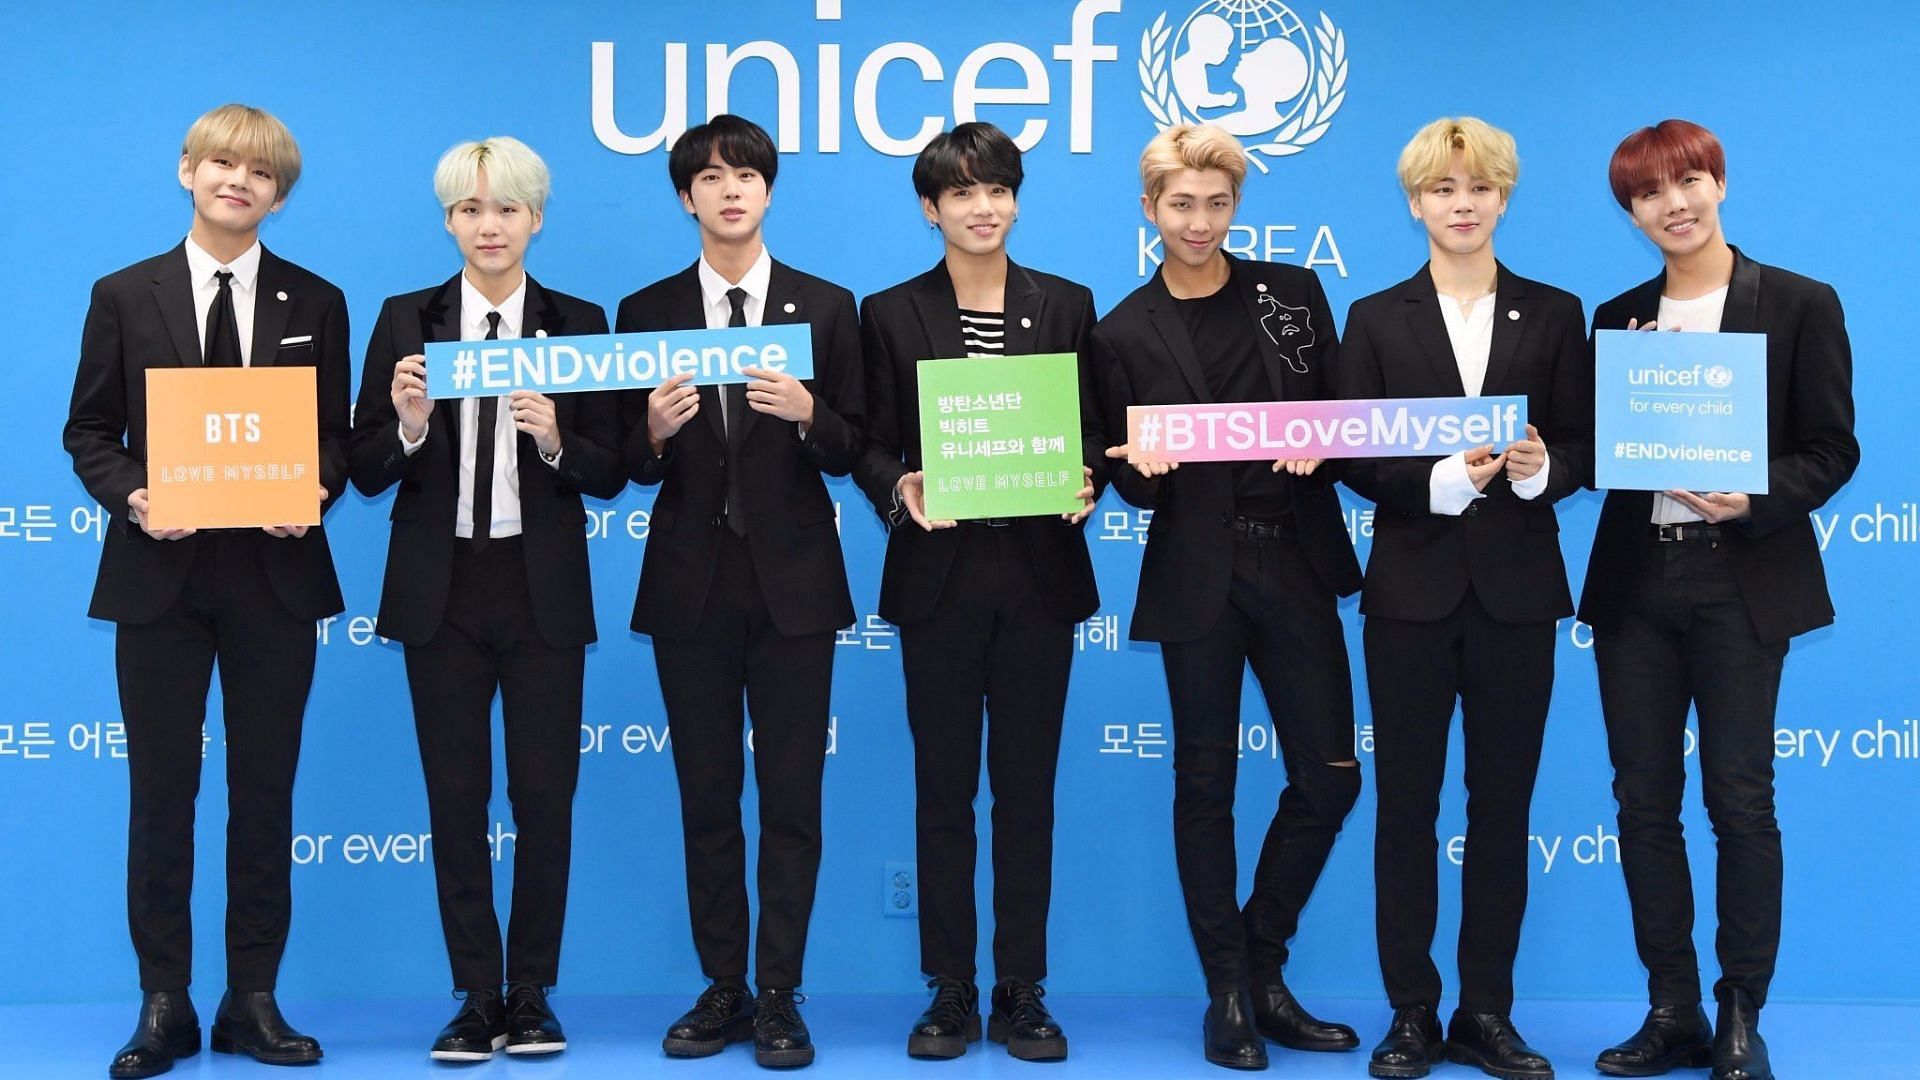 BTS' J-hope donates 100 million won to children in Africa